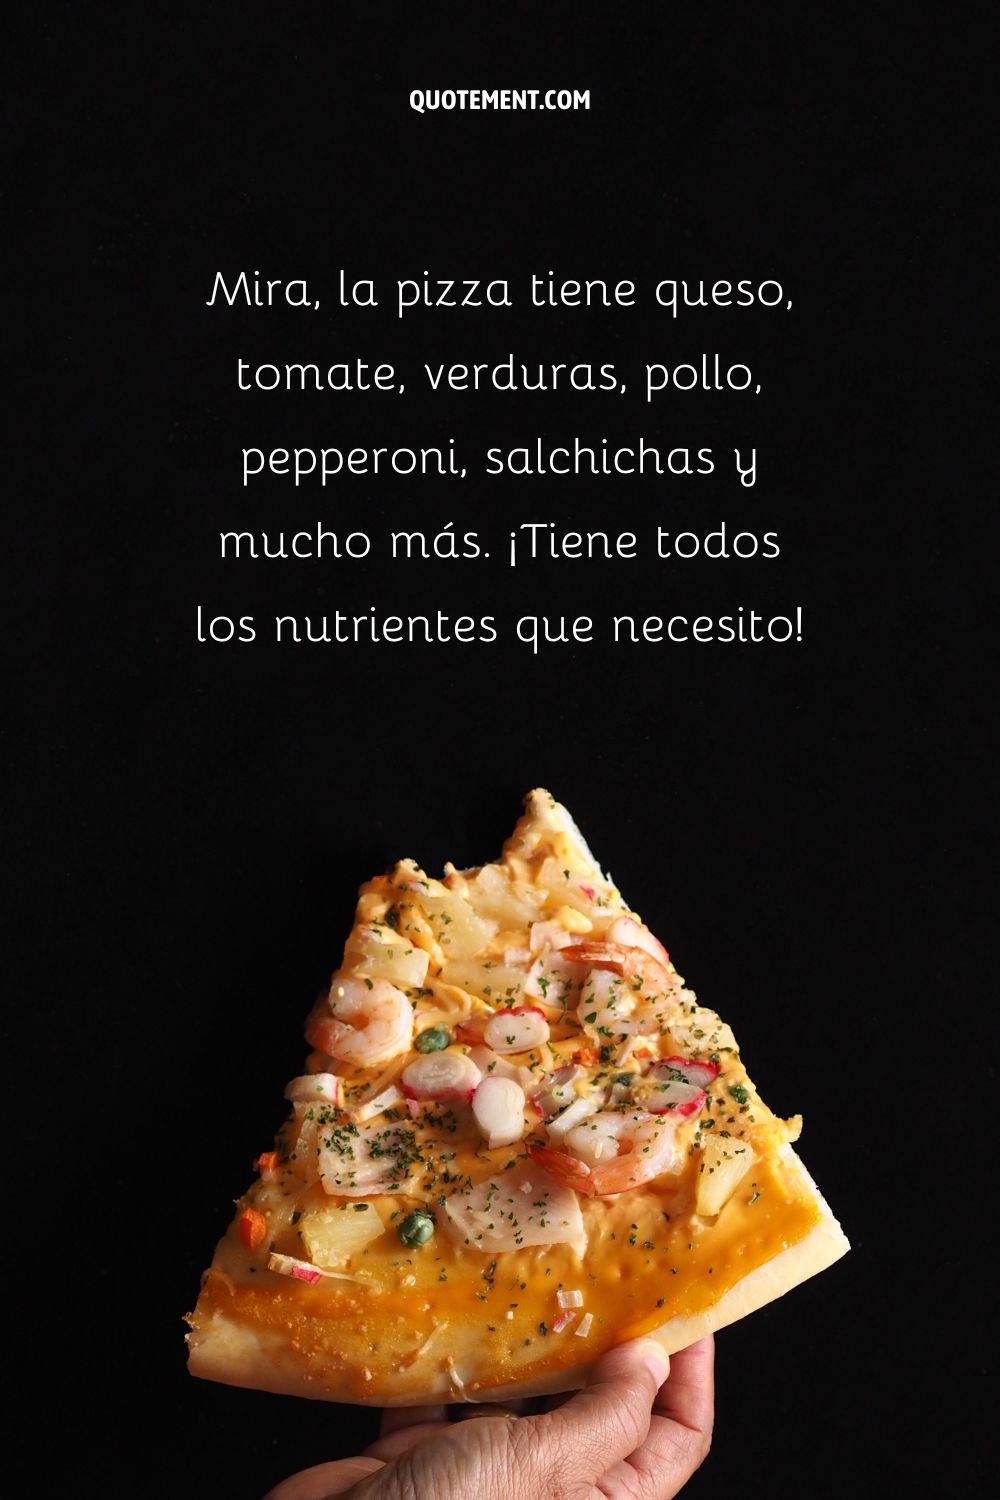 Mira, la pizza tiene queso, tomate, verduras, pollo, pepperoni, salchichas y mucho más. Tiene todos los nutrientes que necesito